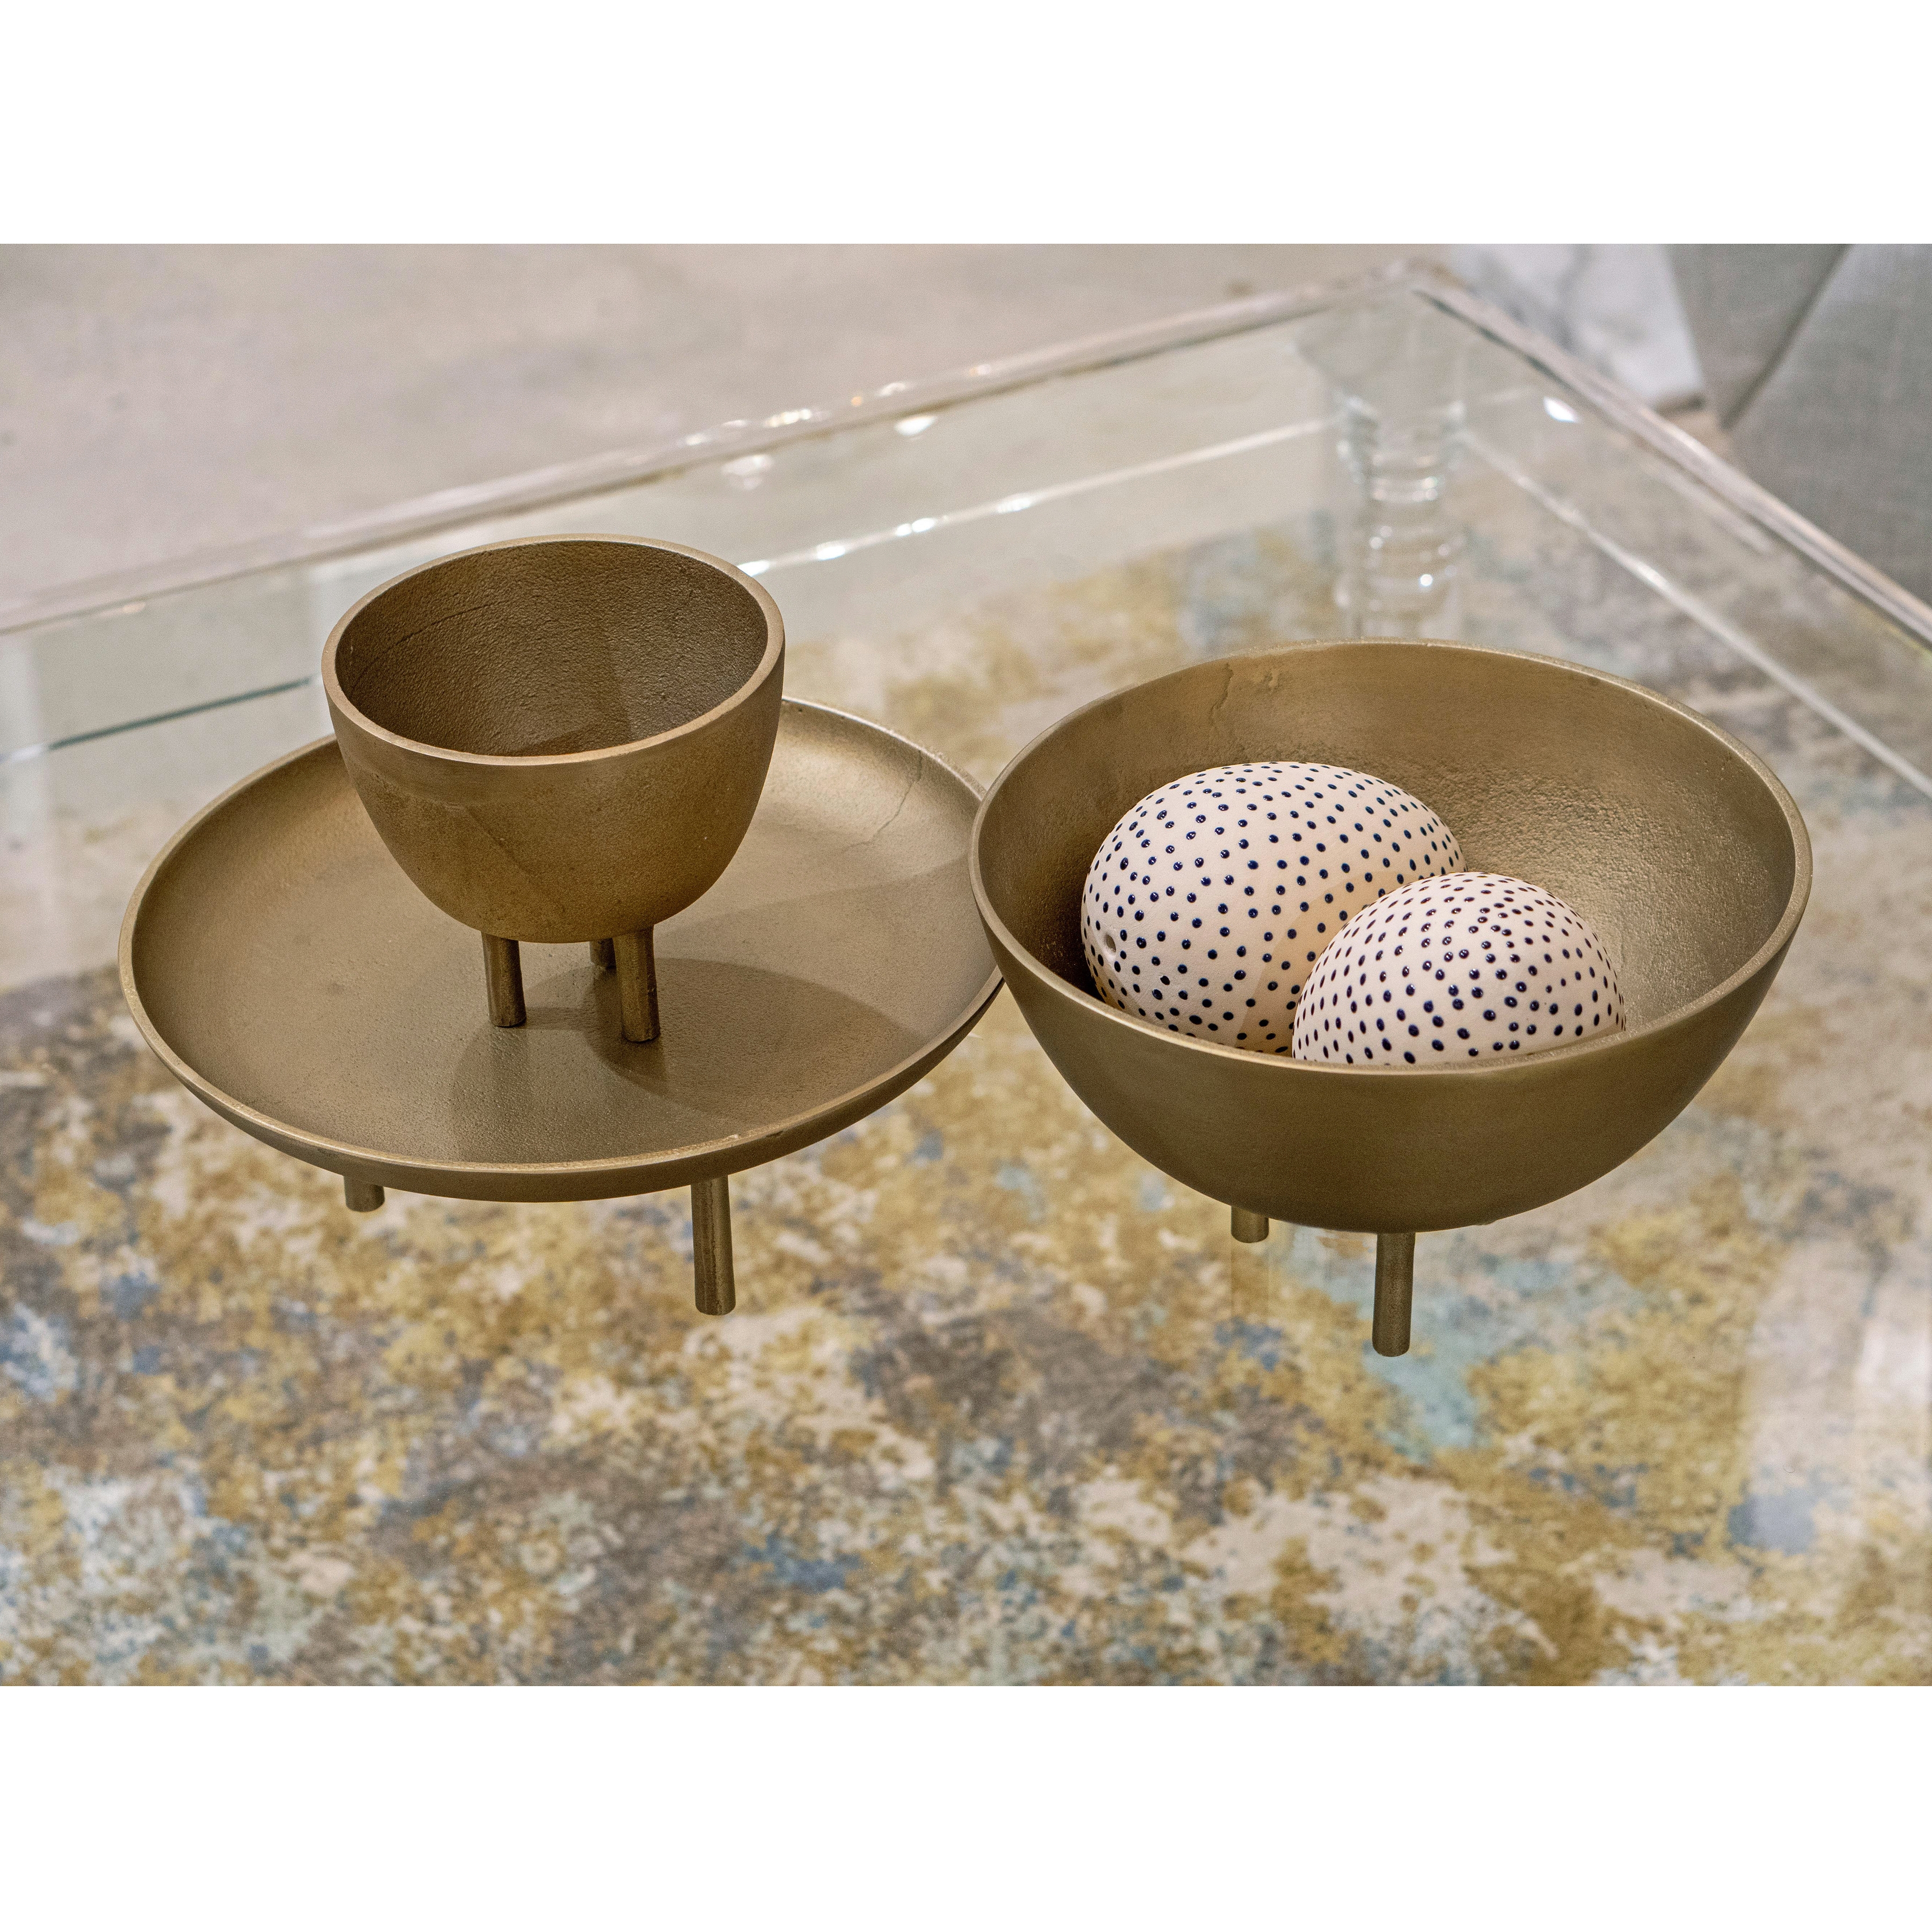 Kiser Bowl - Small Brass - Image 7